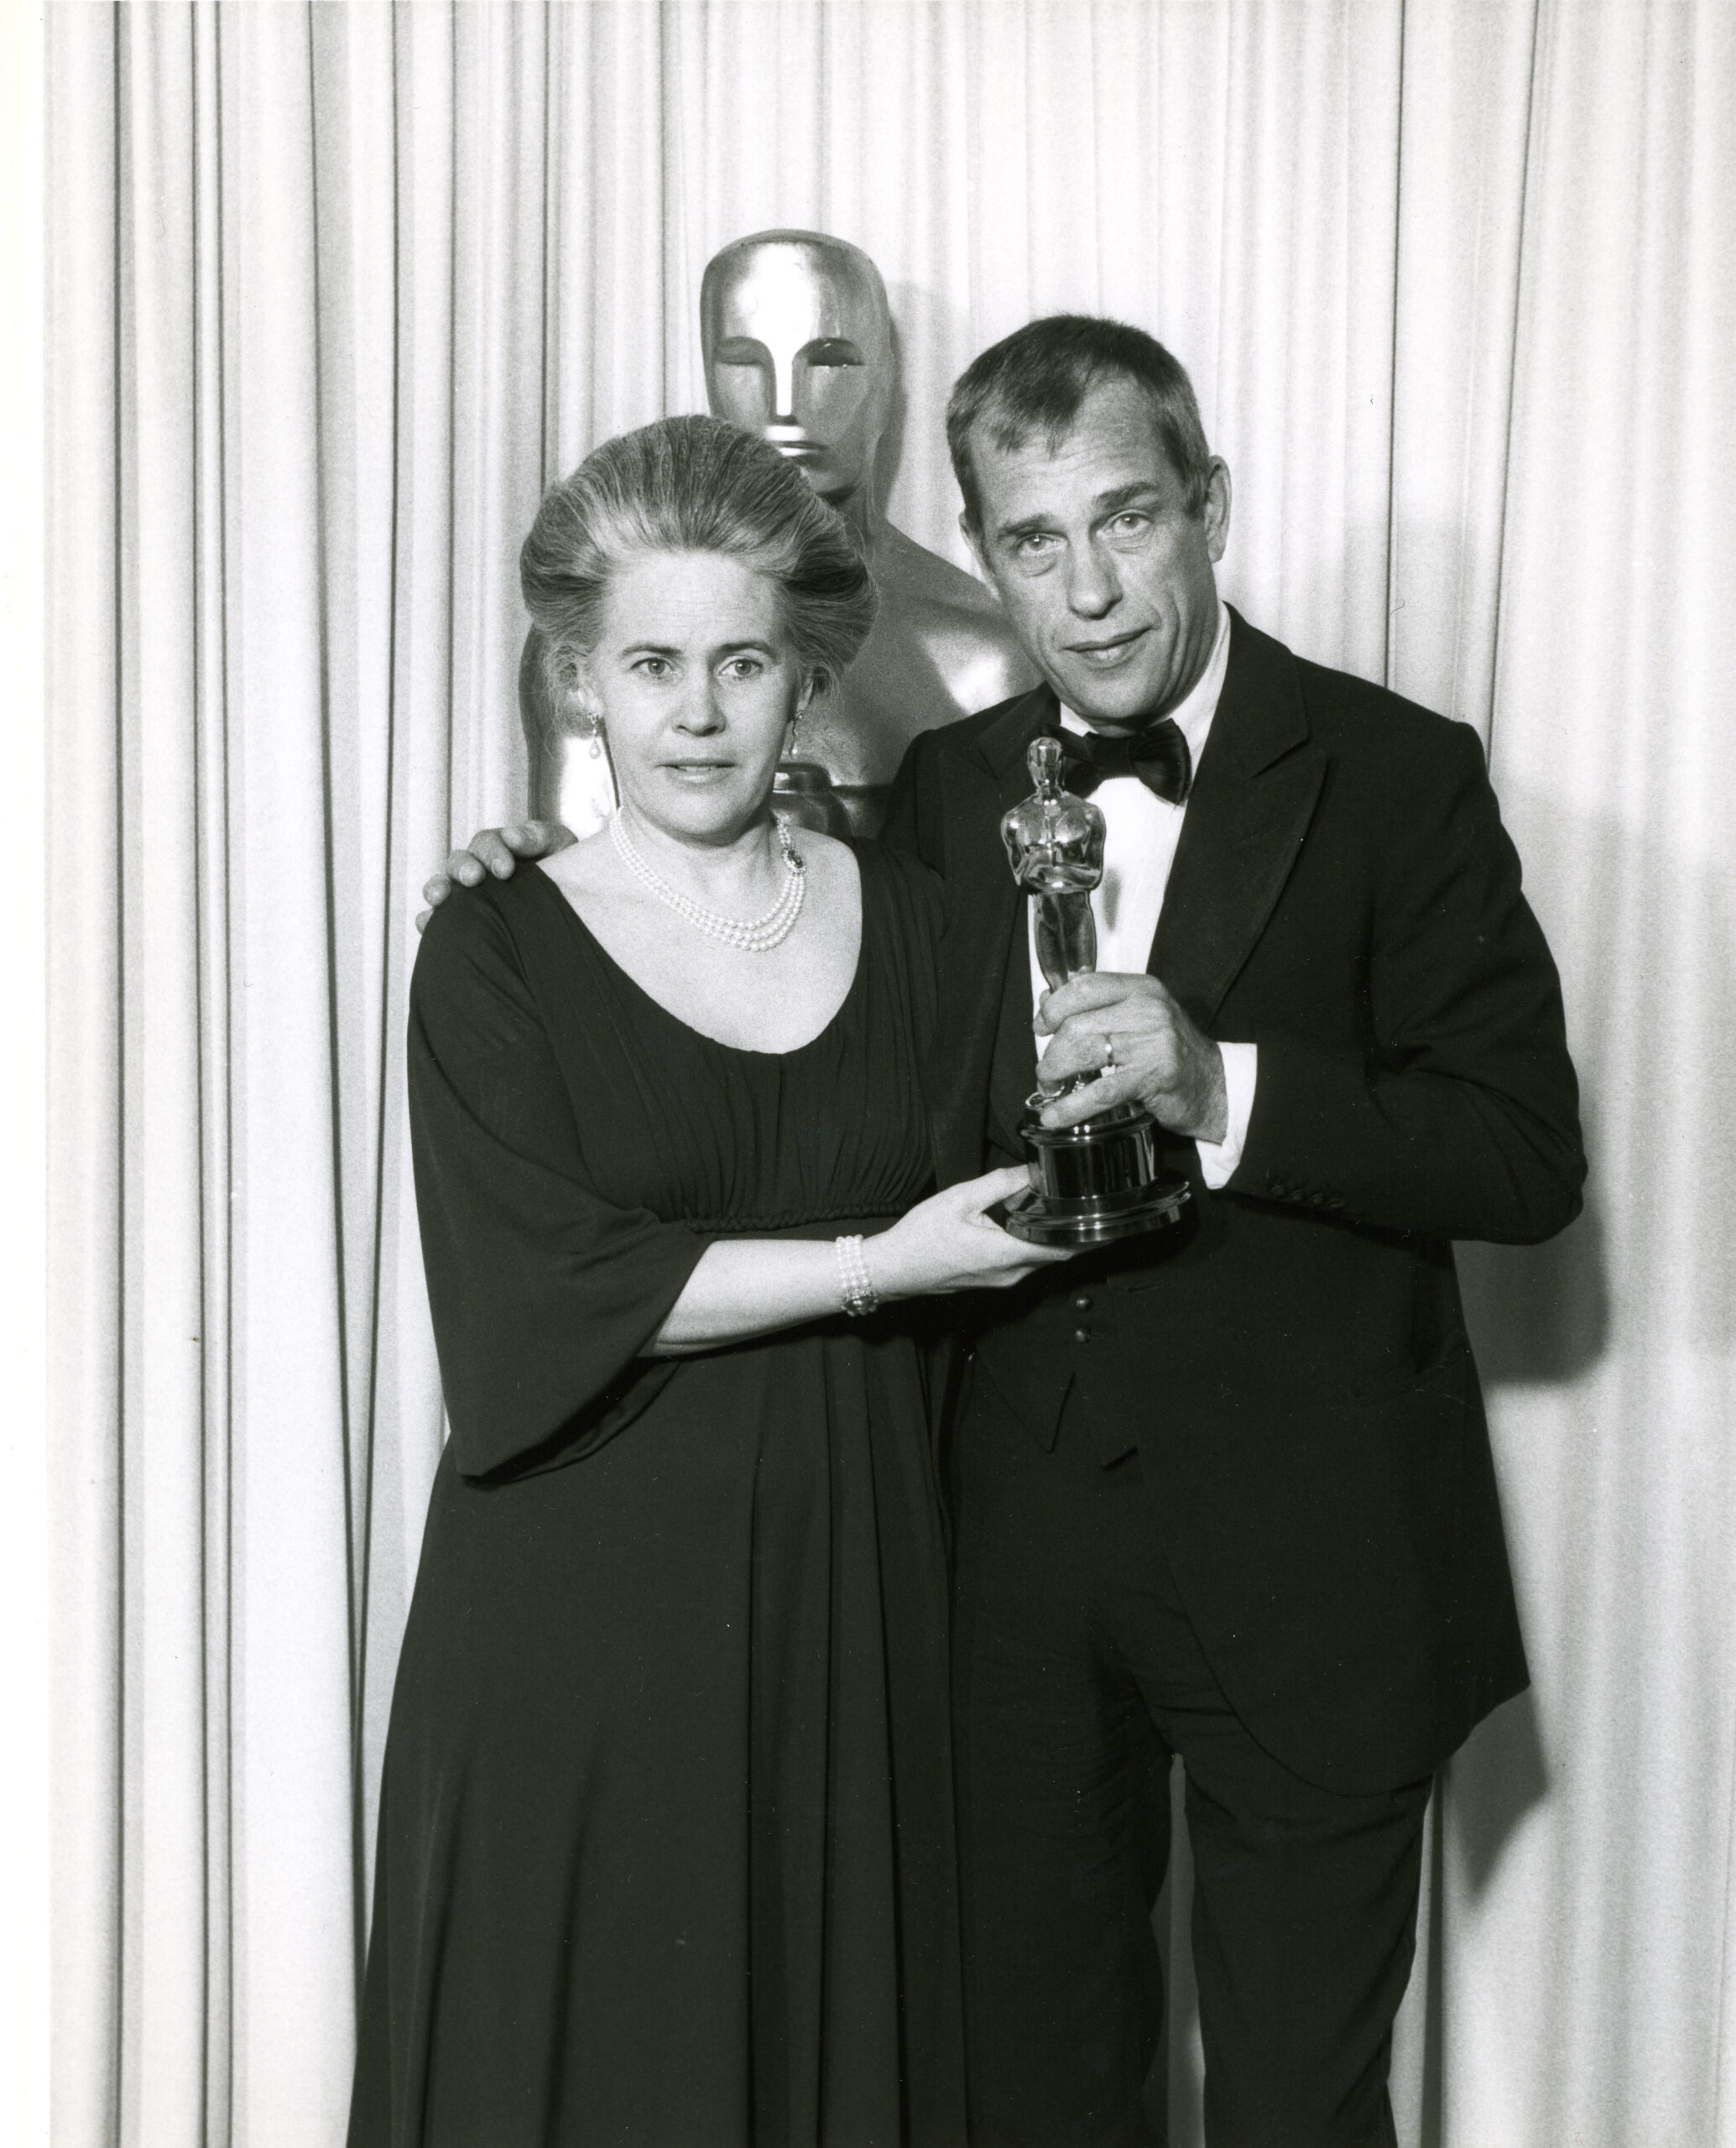  Ingrid Bergman (född von Rosen) och Jörn Donner med Oscar-statyetten för bästa utländska film  för Fanny och Alexander. Foto: Bergmancenter 